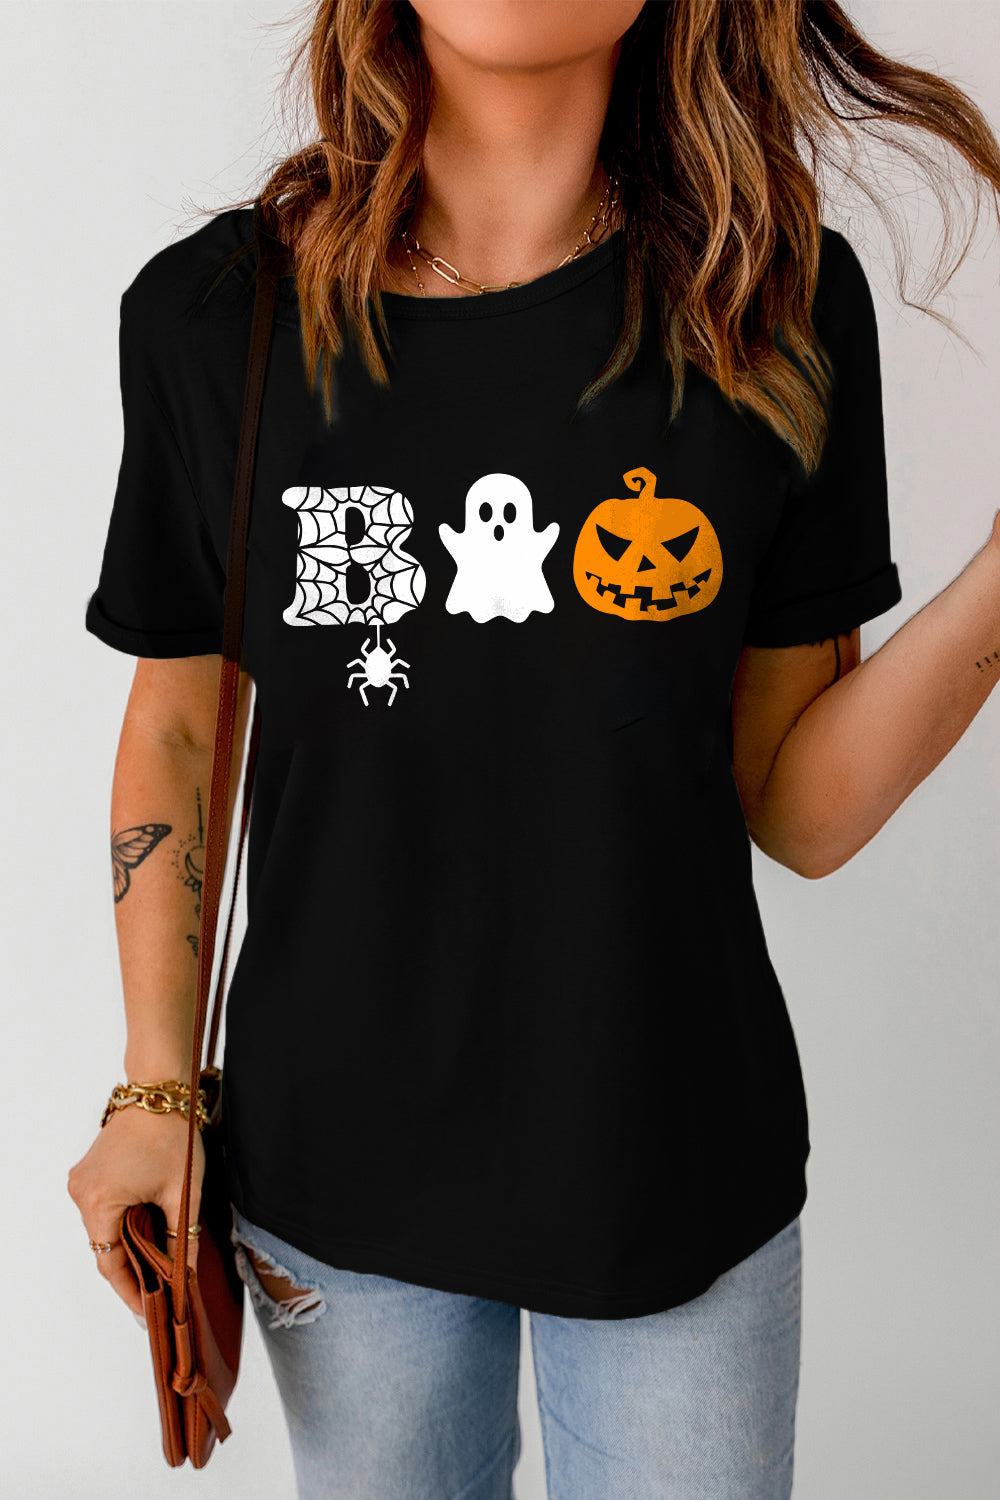 Halloween BOO Graphic T-Shirt, Fall Pumpkin Shirt